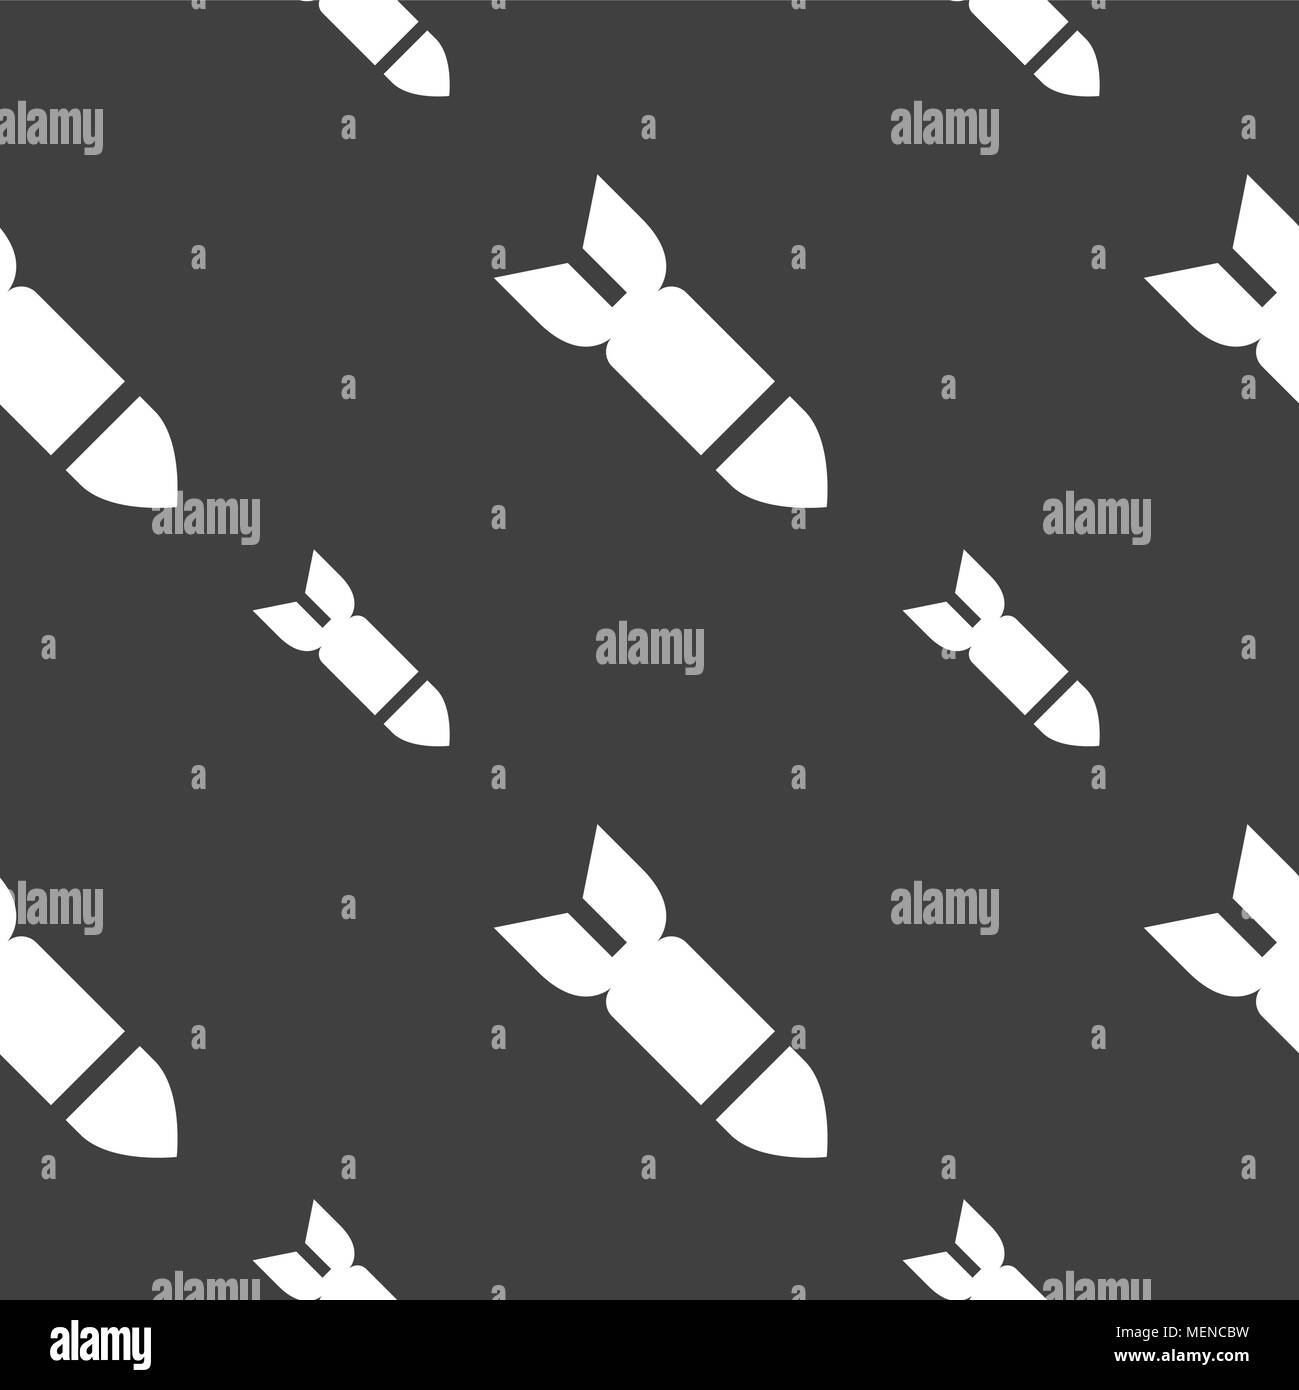 Rakete Rakete Waffensymbol unterzeichnen. Nahtlose Muster auf einem grauen Hintergrund. Vector Illustration Stock Vektor